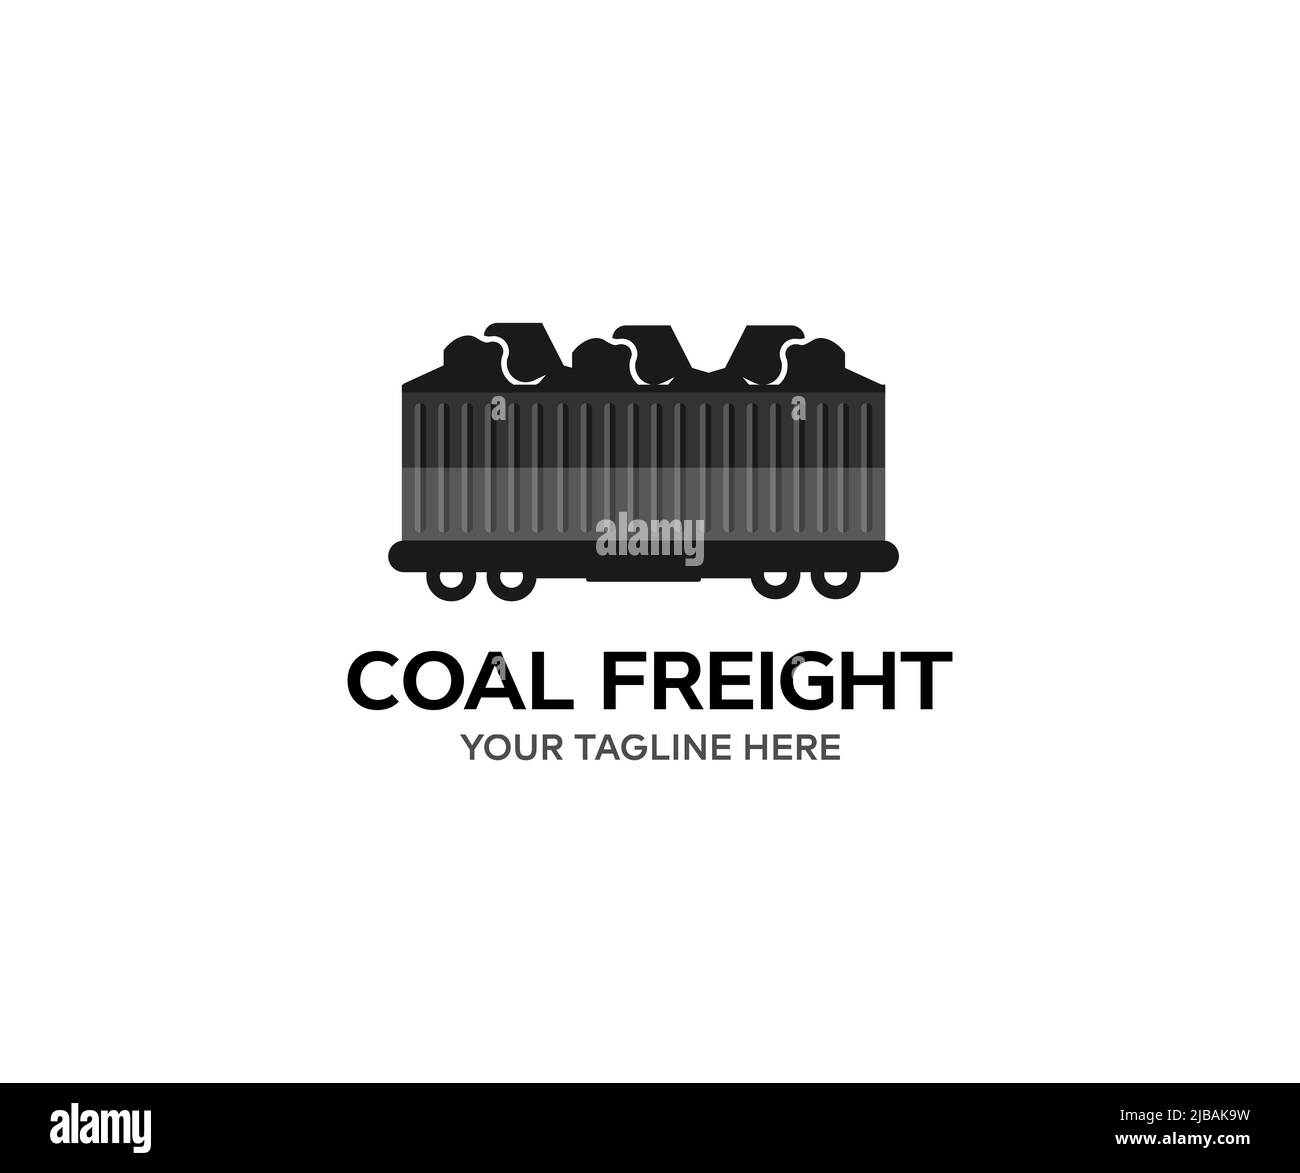 Treno carbone minerario esportazione spedizione logo design. Carro ferroviario caricato di carbone. Treno merci carbone alla stazione ferroviaria. Carro di carbone, minerario. Illustrazione Vettoriale